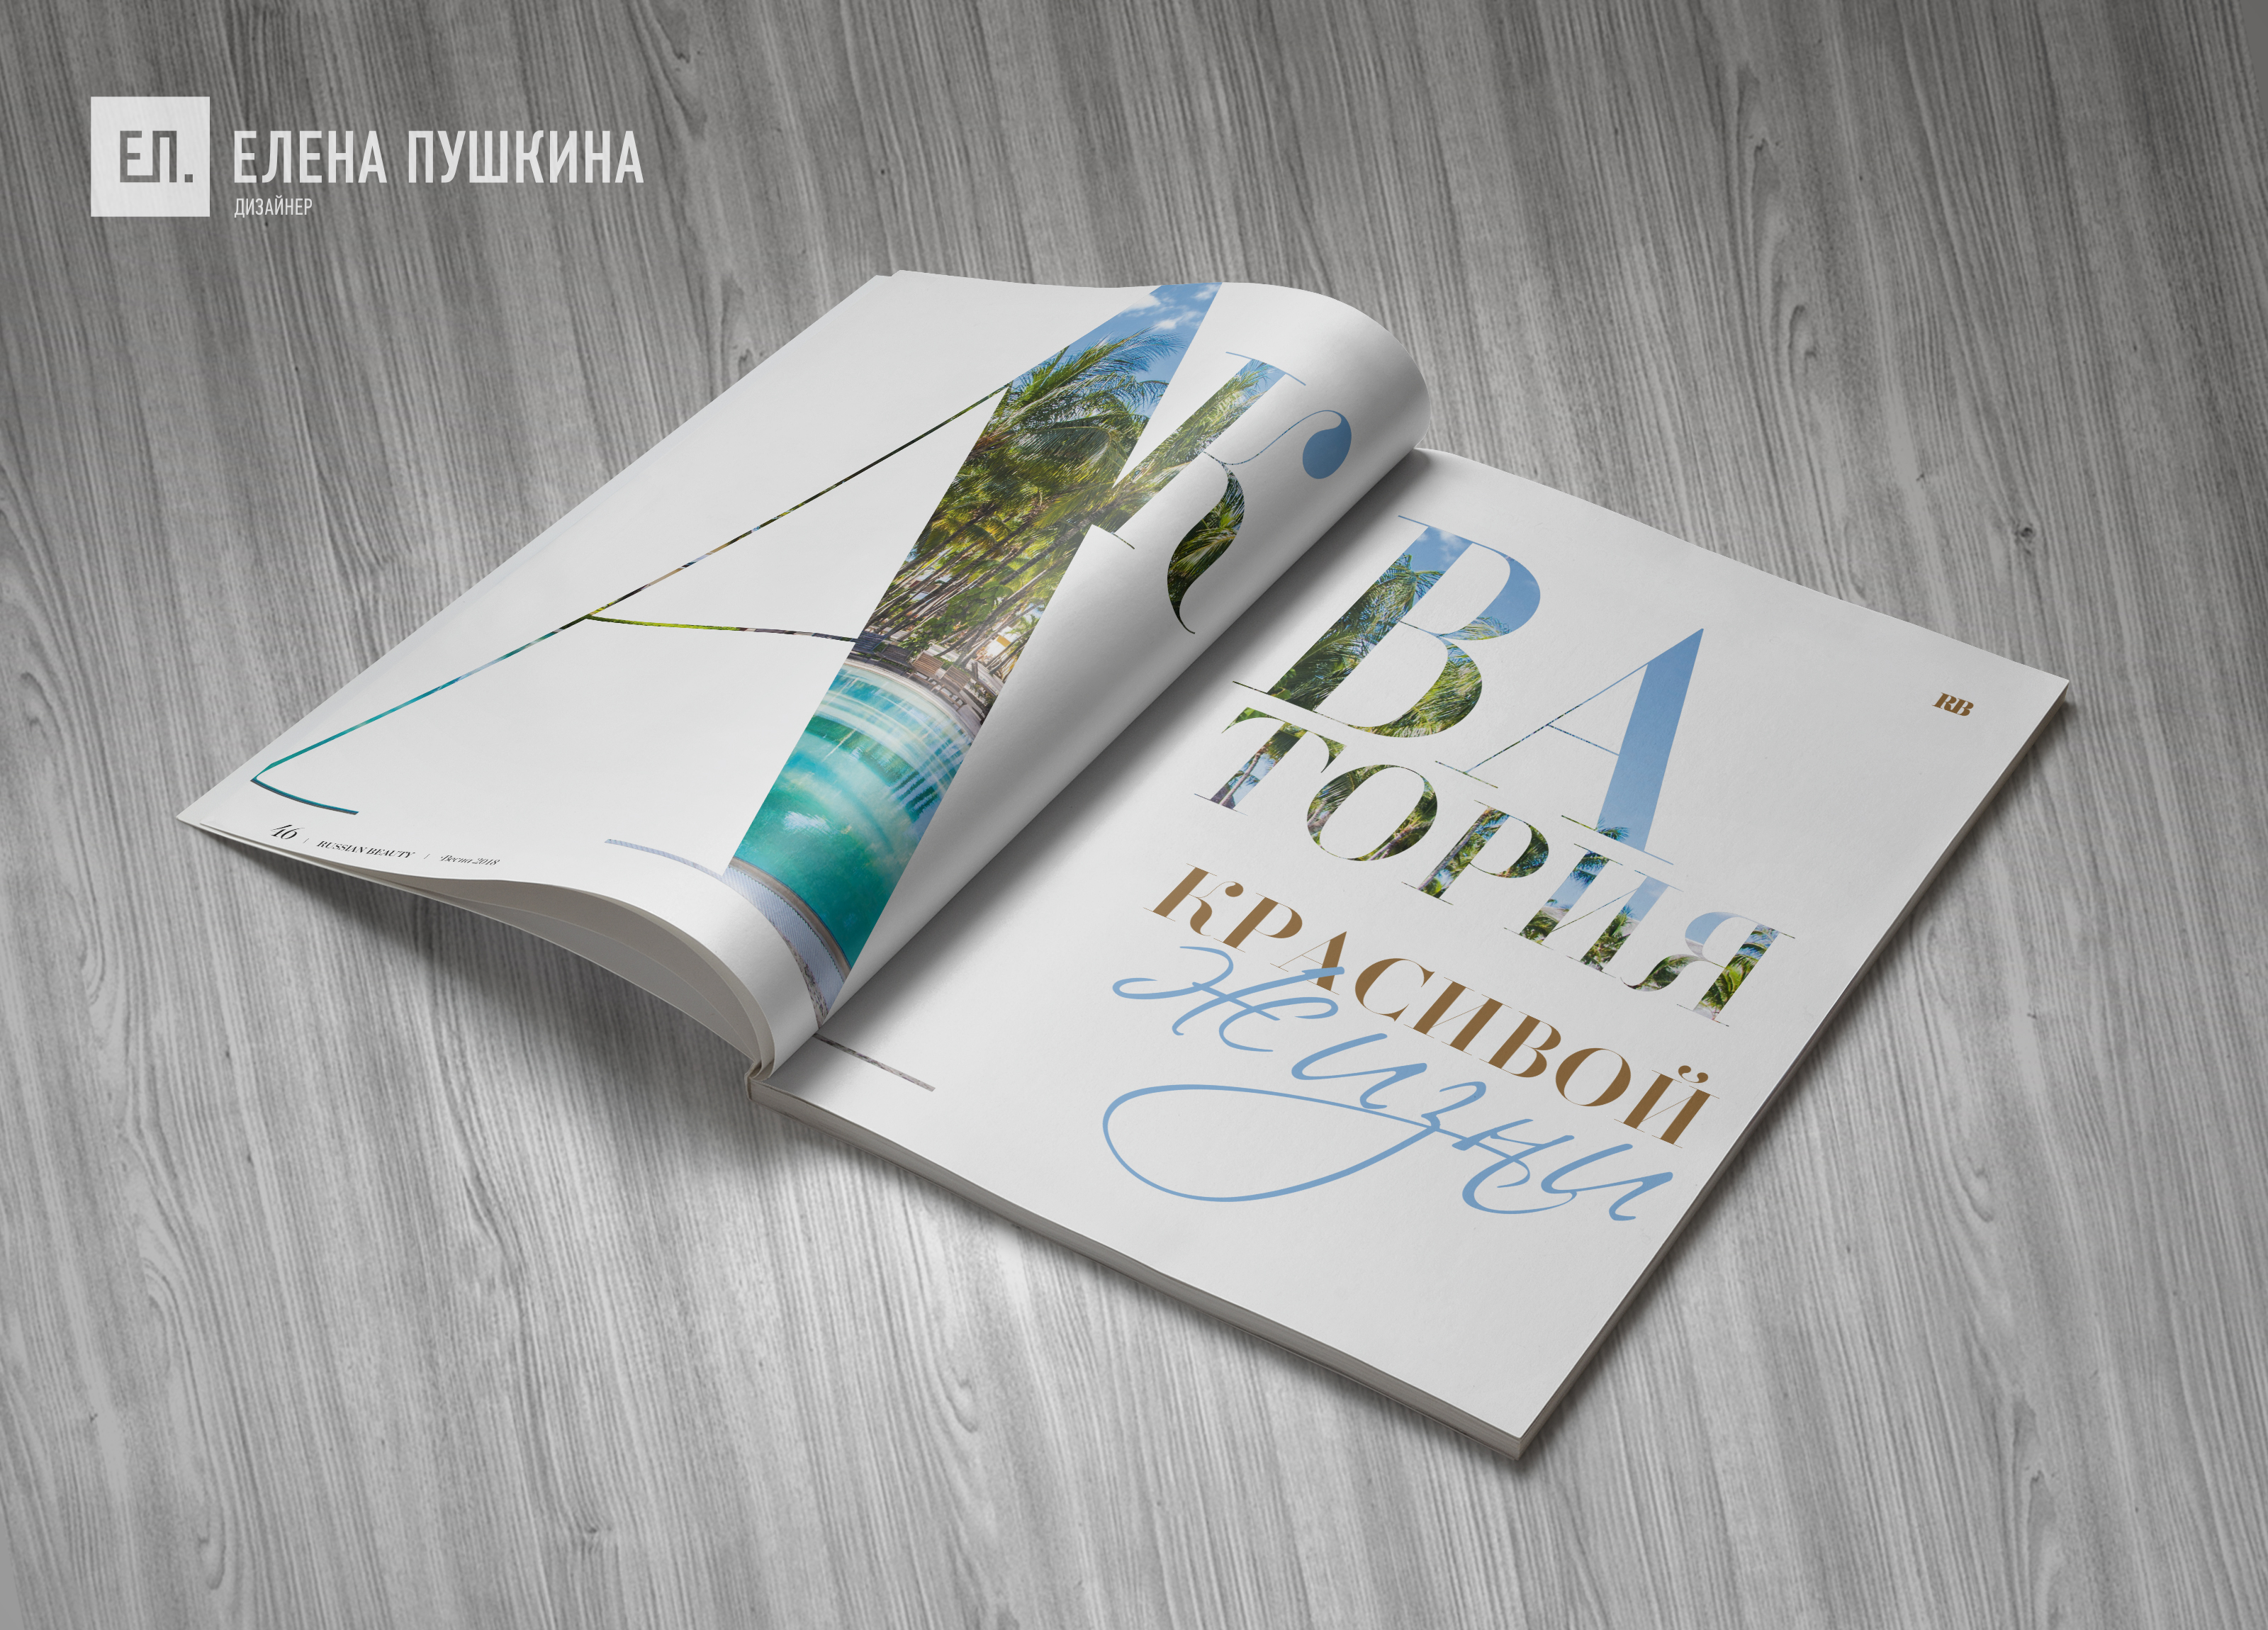 Глянцевый журнал «RUSSIAN BEAUTY» №2 май 2018 — разработка с «нуля» логотипа, обложки, макета и вёрстка журнала Разработка журналов Портфолио